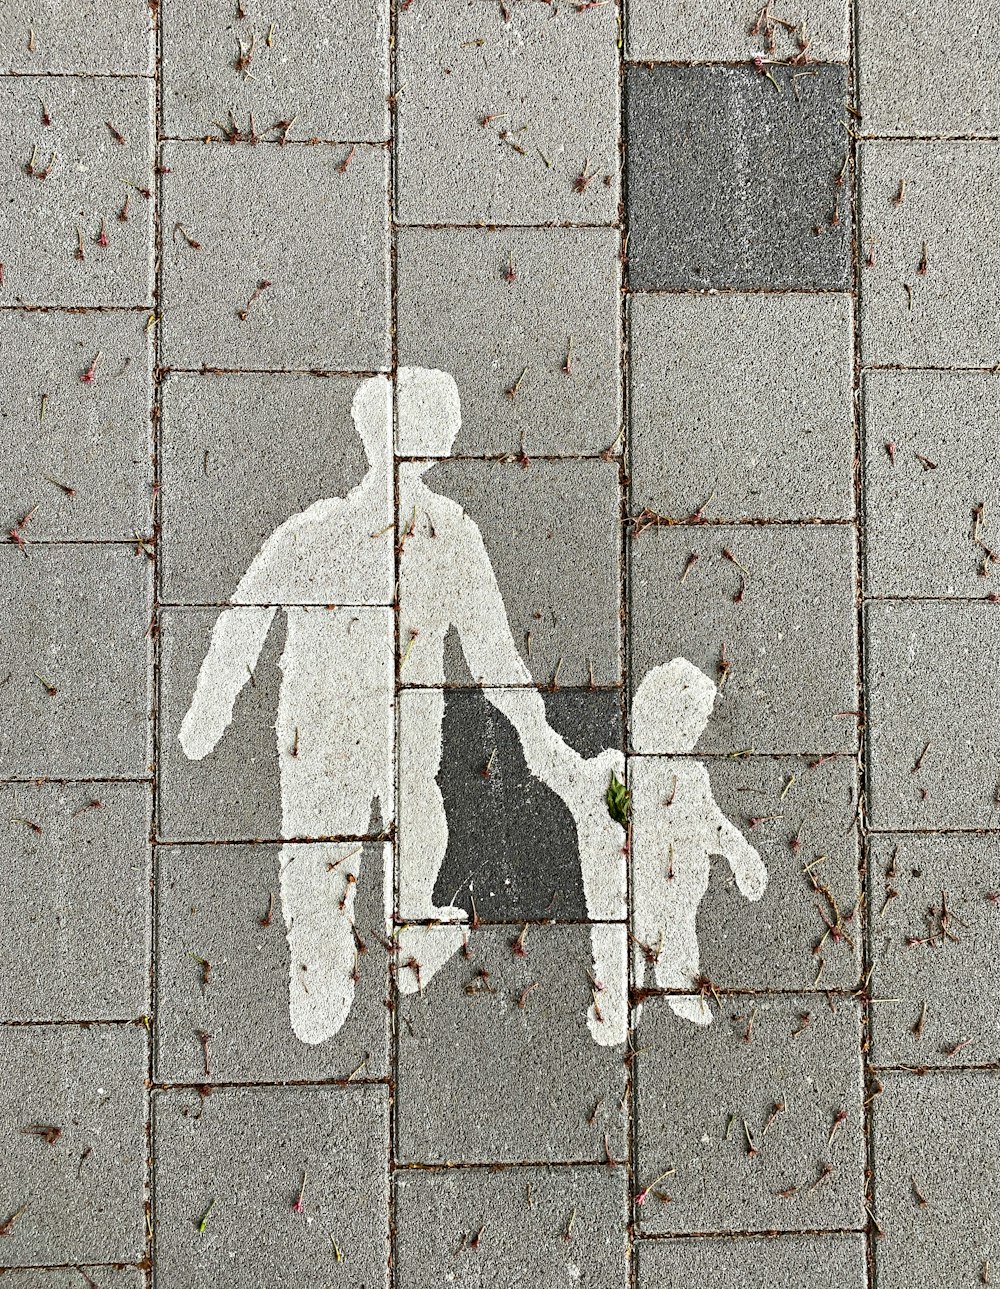 2 personas caminando sobre pavimento de concreto gris